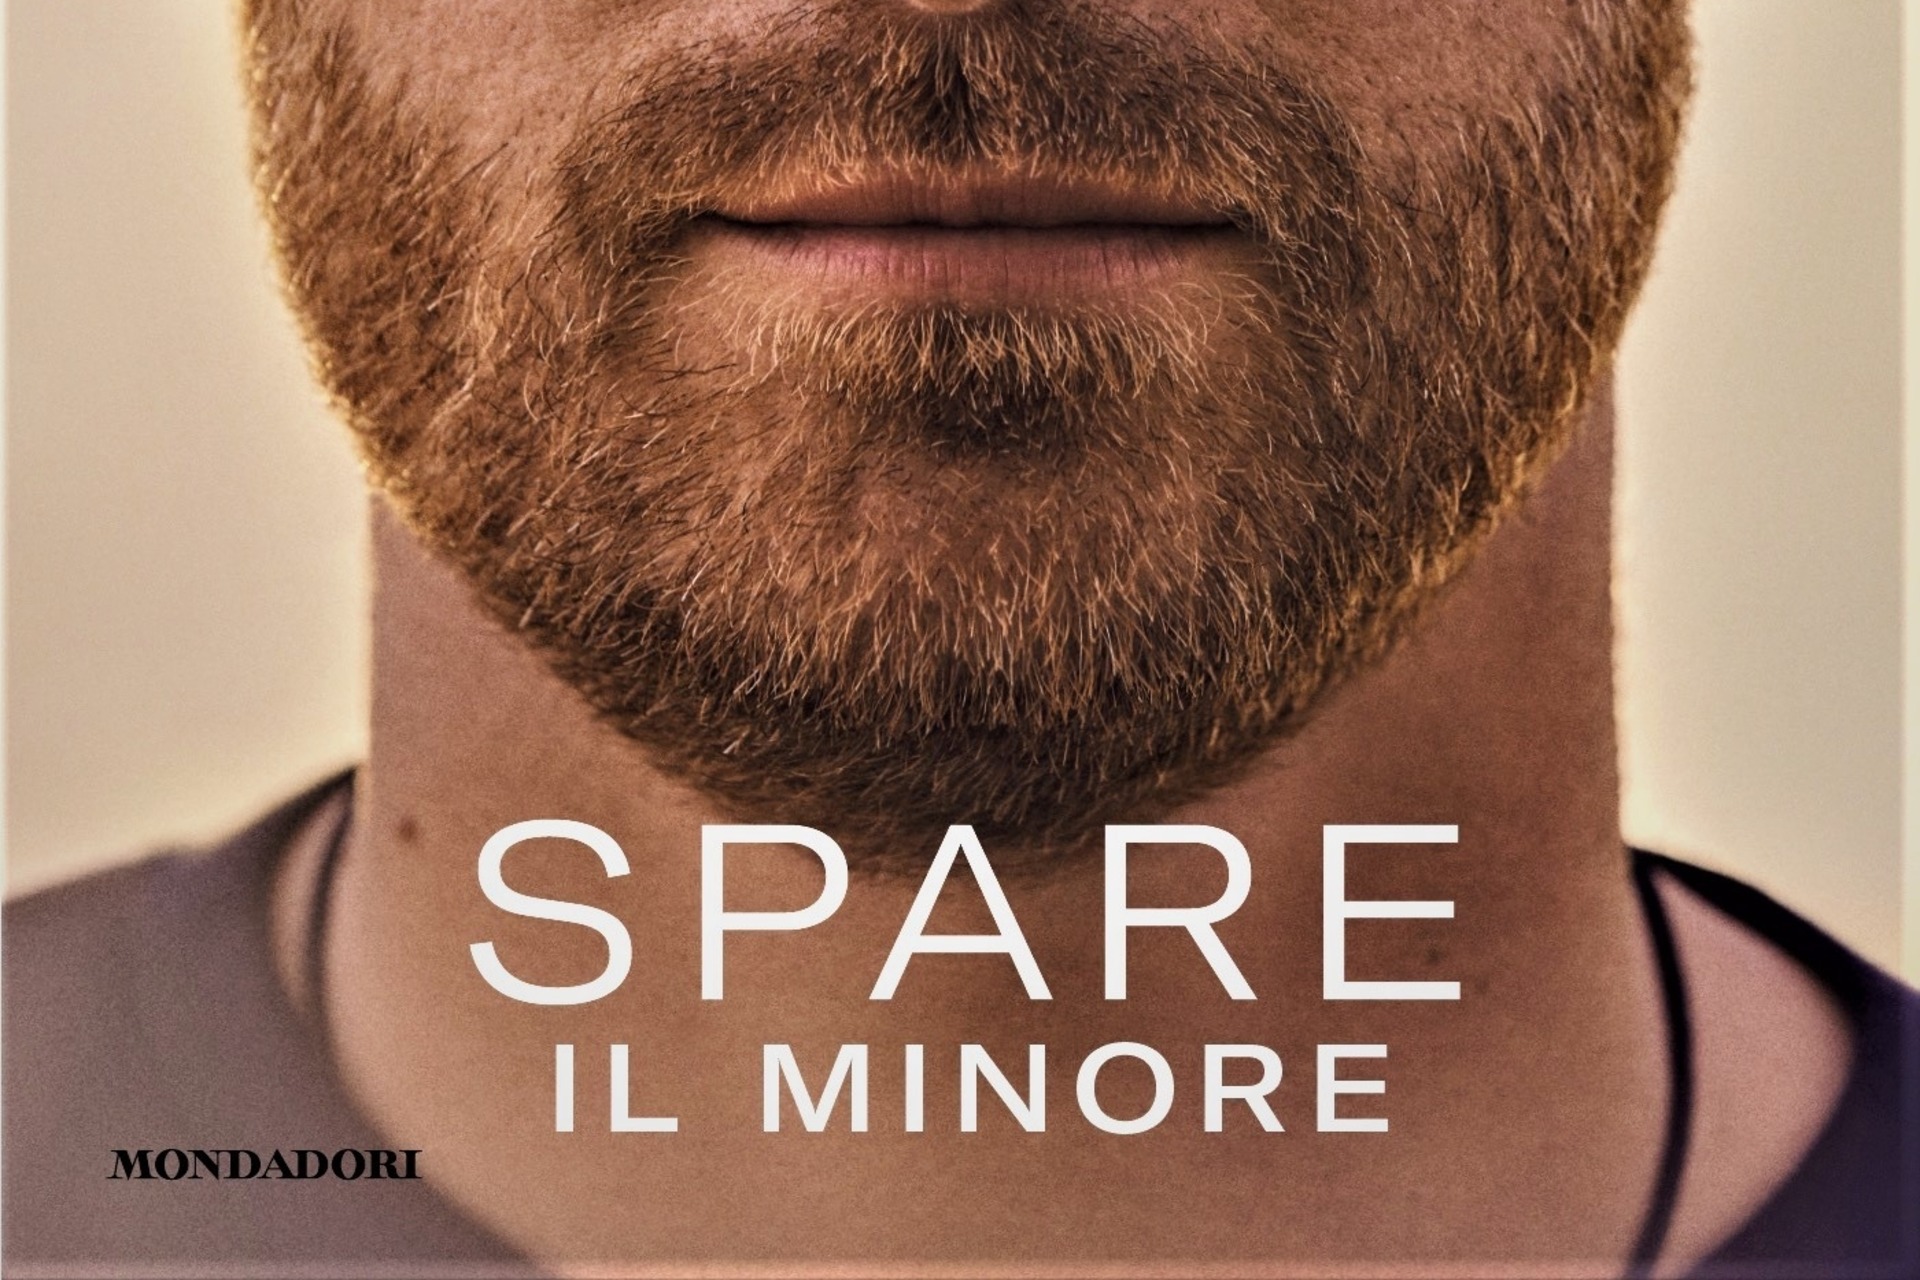 სათადარიგო: სასექსის ჰერცოგის პრინც ჰარის ავტობიოგრაფიული წიგნის ყდის ქვედა ნაწილი, მონდადორის მიერ გამოცემული იტალიური ვერსიით, სათაურით "Spare, il minor"